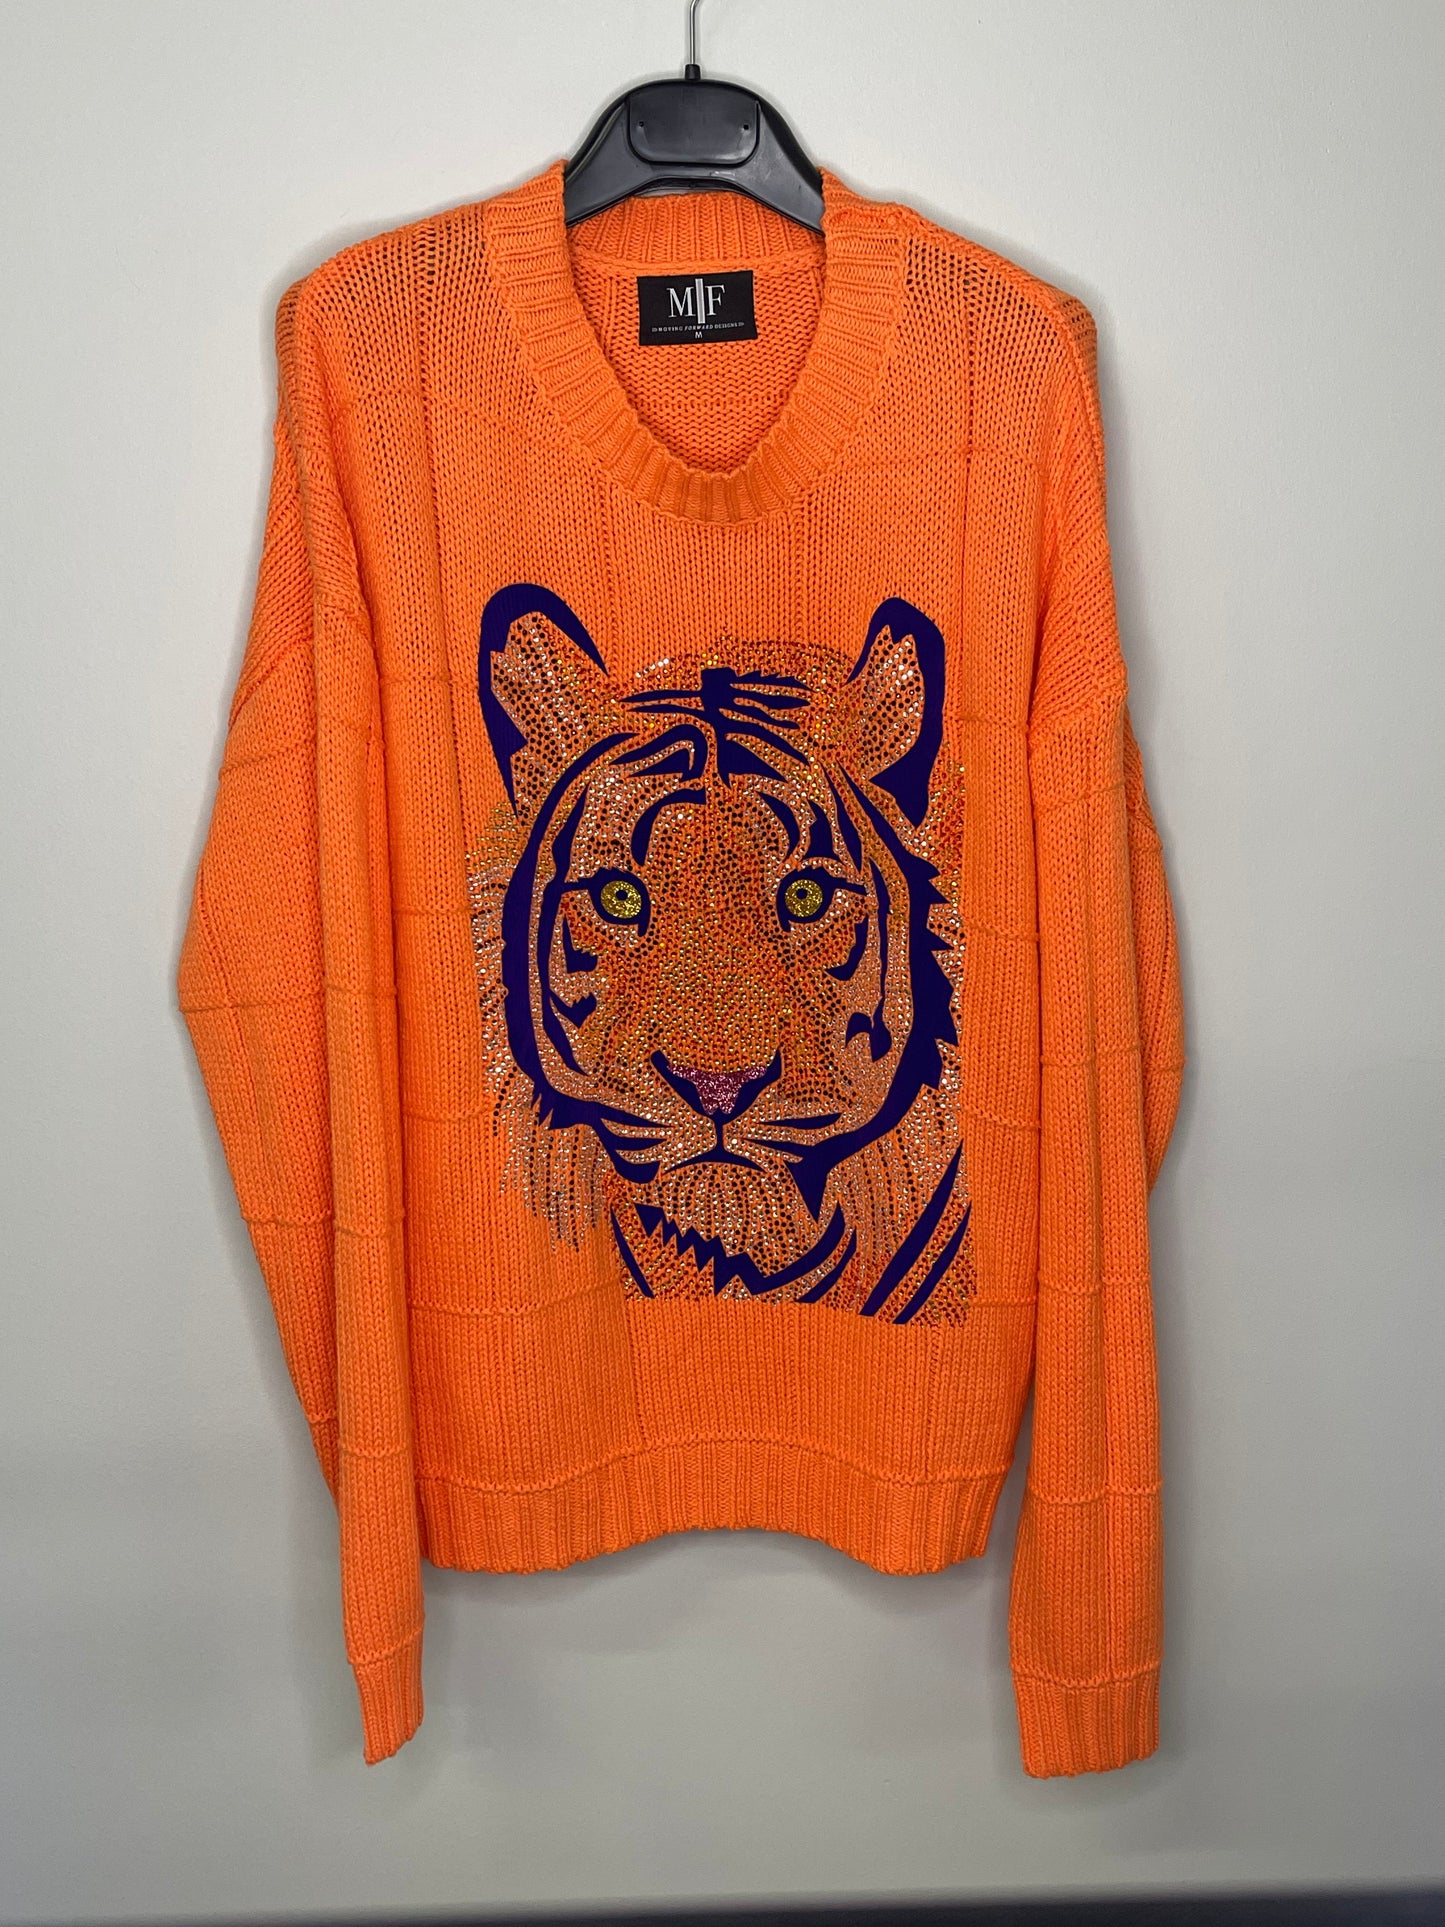 Sweater, Diamond Stitch Orange, Purple Tiger Face